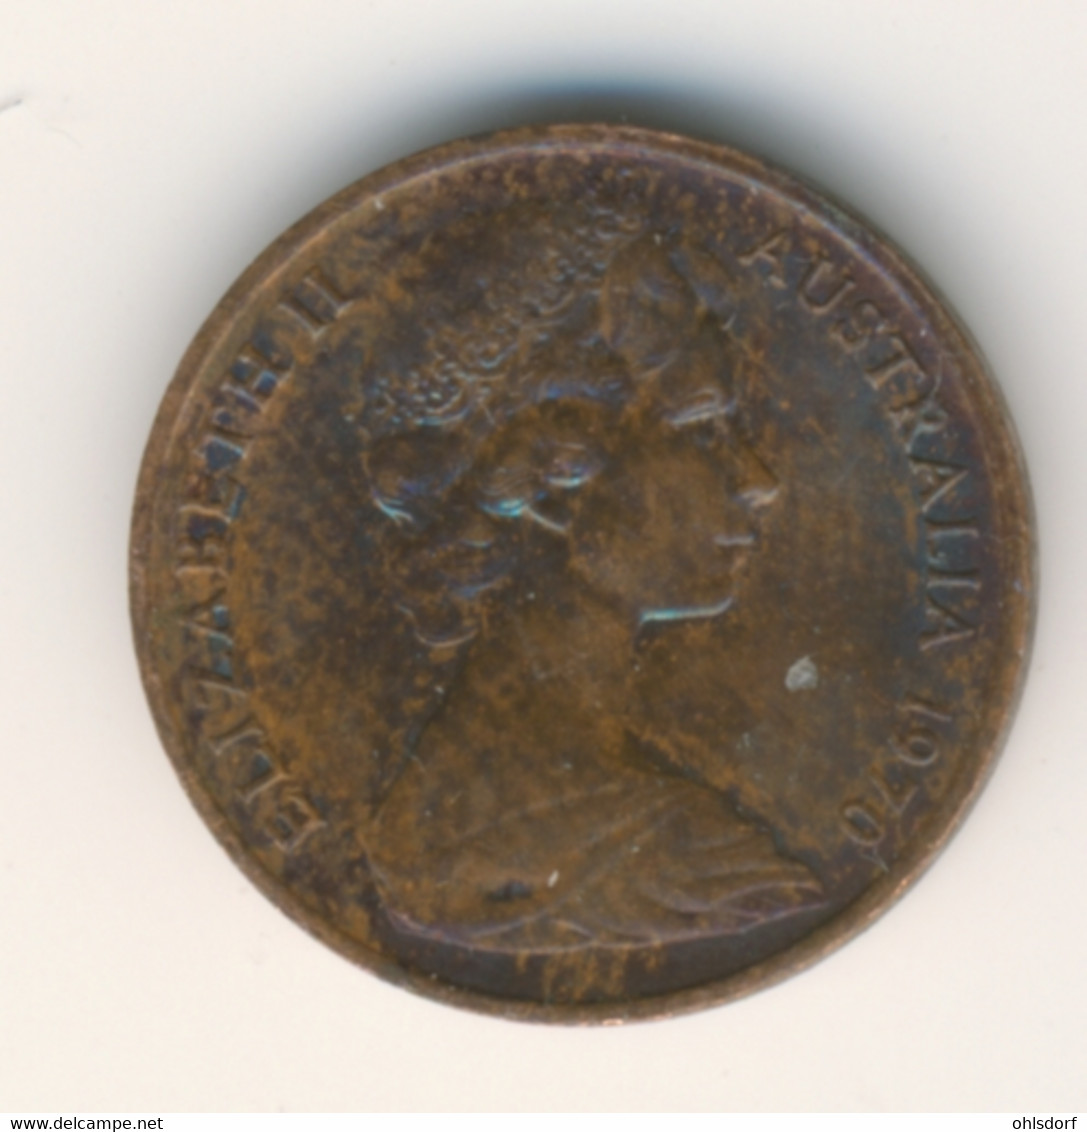 AUSTRALIA 1970: 1 Cent, KM 62 - Cent